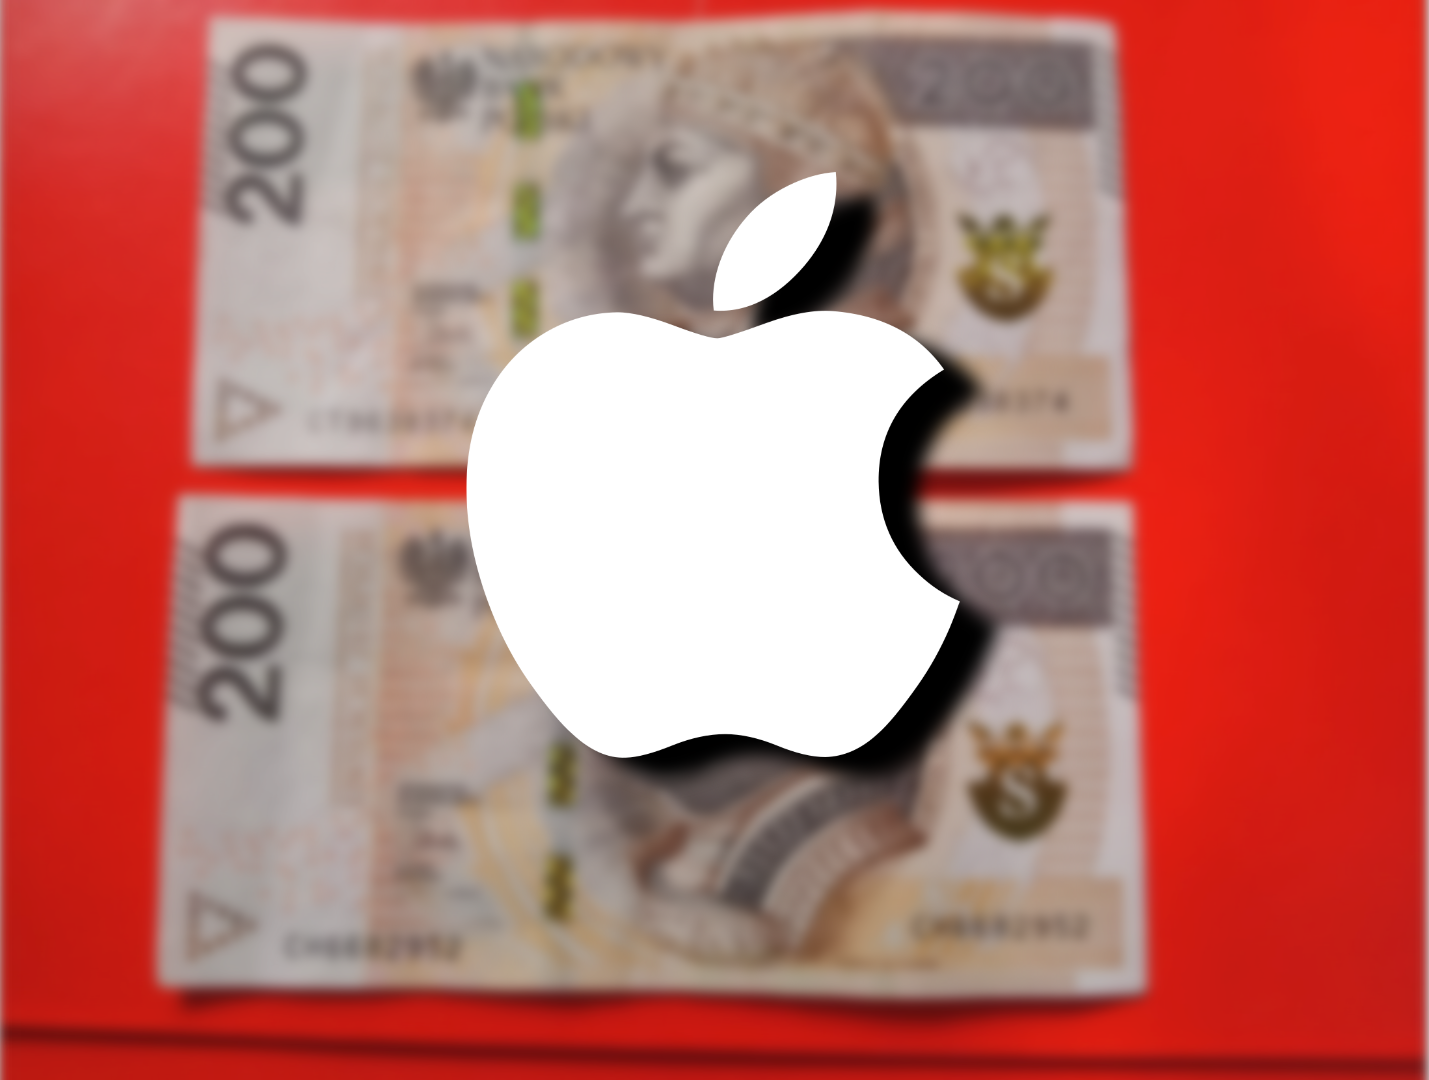 Dwa rozmyte banknoty o nominale 200 złotych leżące na czerwonym tle z białym logo Apple na pierwszym planie, które jest wyostrzone.